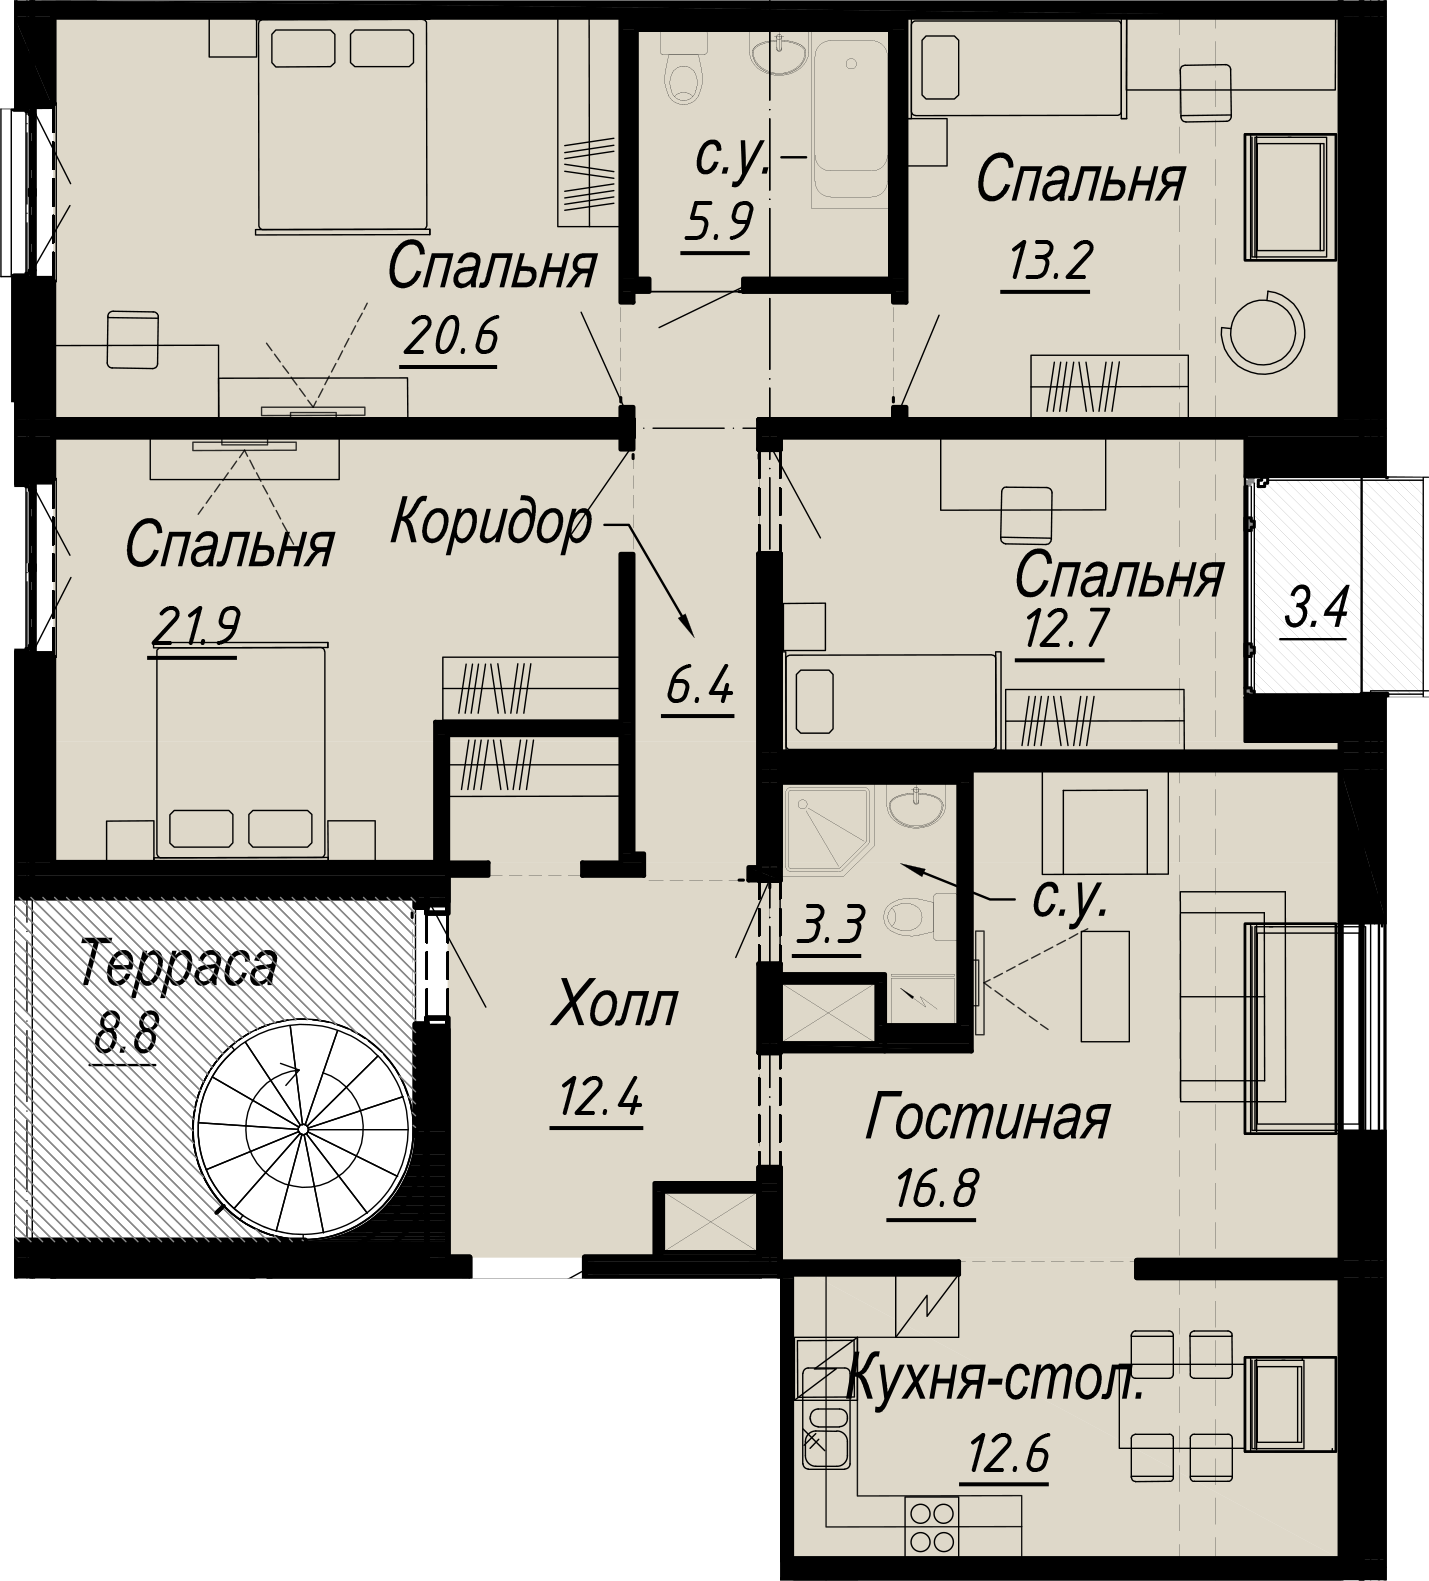 5-комнатная квартира  №5-8 в Meltzer Hall: 150.29 м², этаж 8 - купить в Санкт-Петербурге